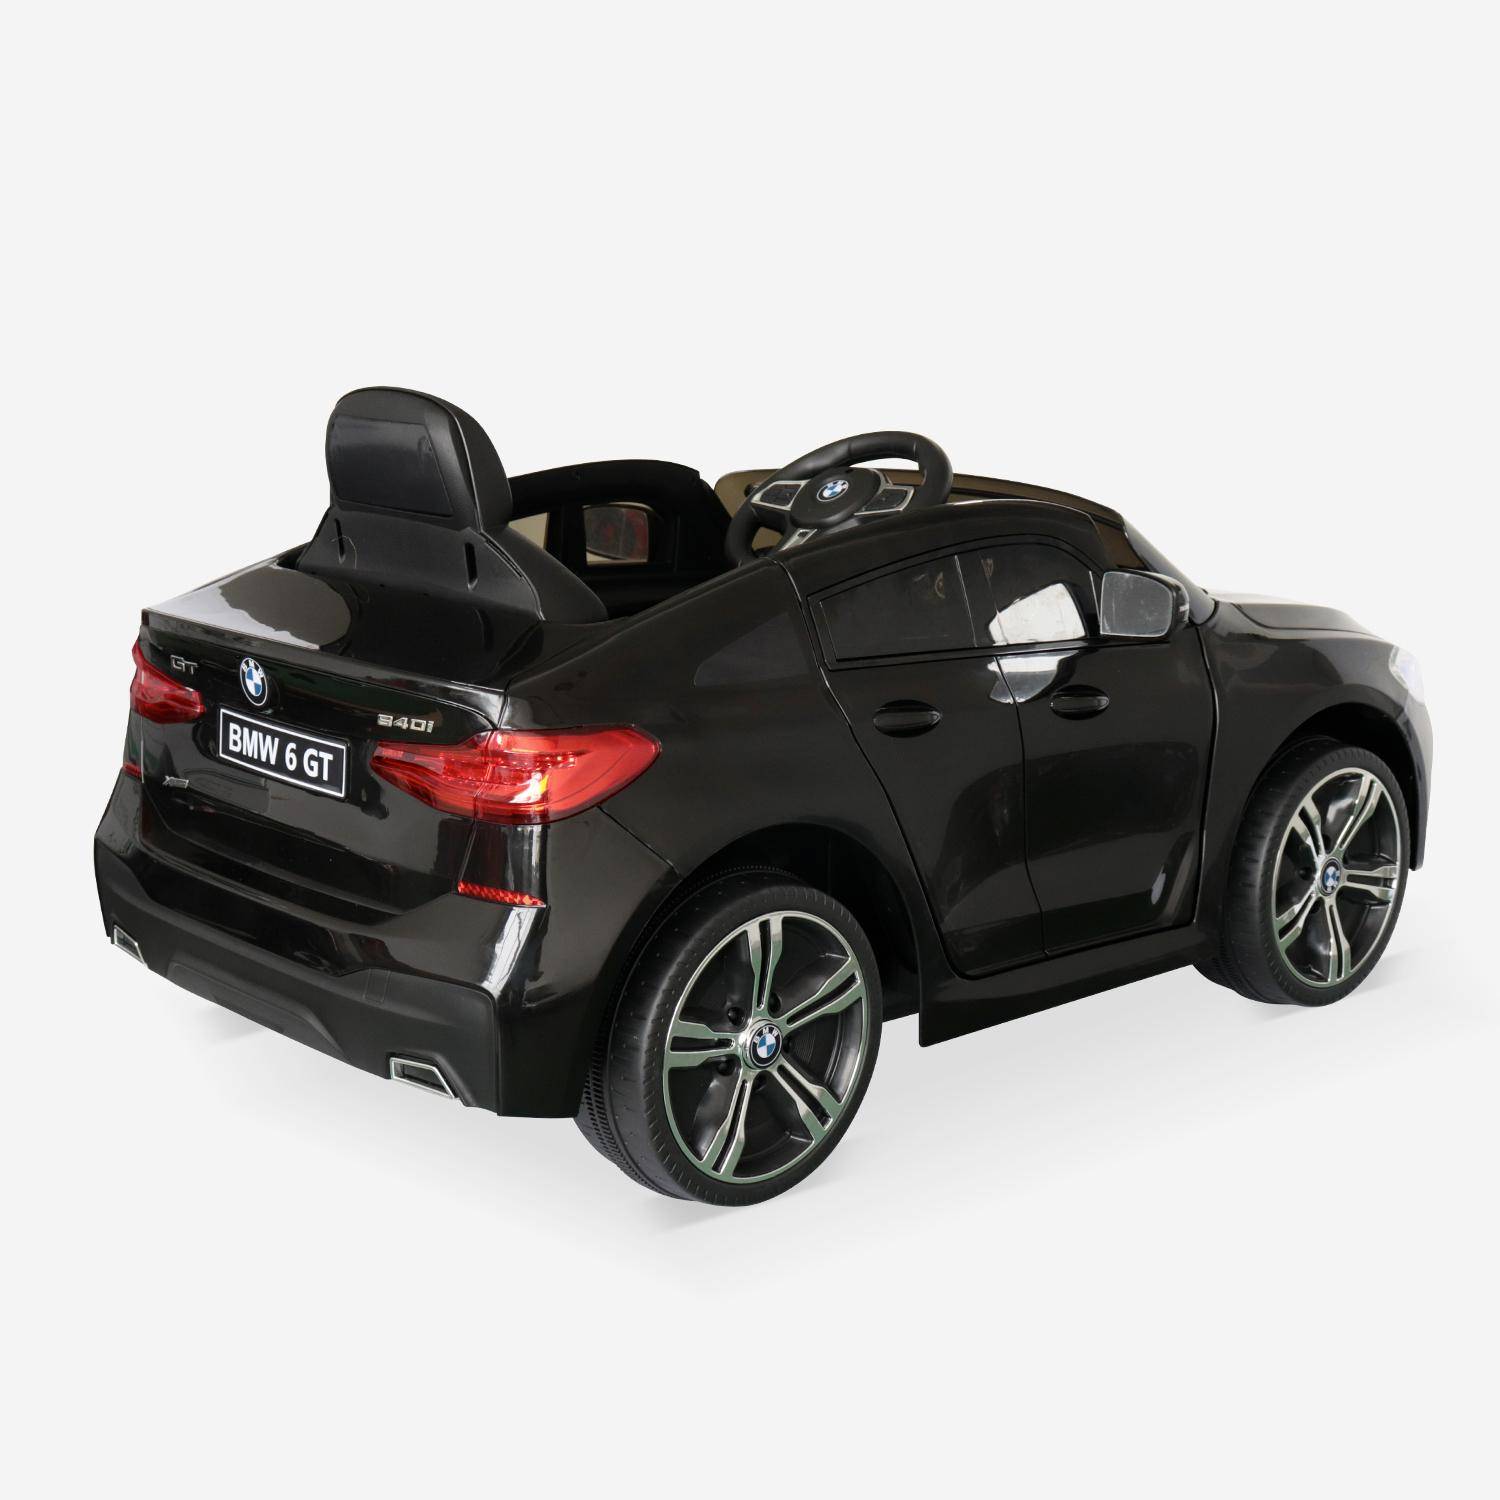 BMW Serie 6 GT Gran Turismo nera, auto elettrica per bambini 12V 4 Ah, 1 posto, con autoradio e telecomando,sweeek,Photo3